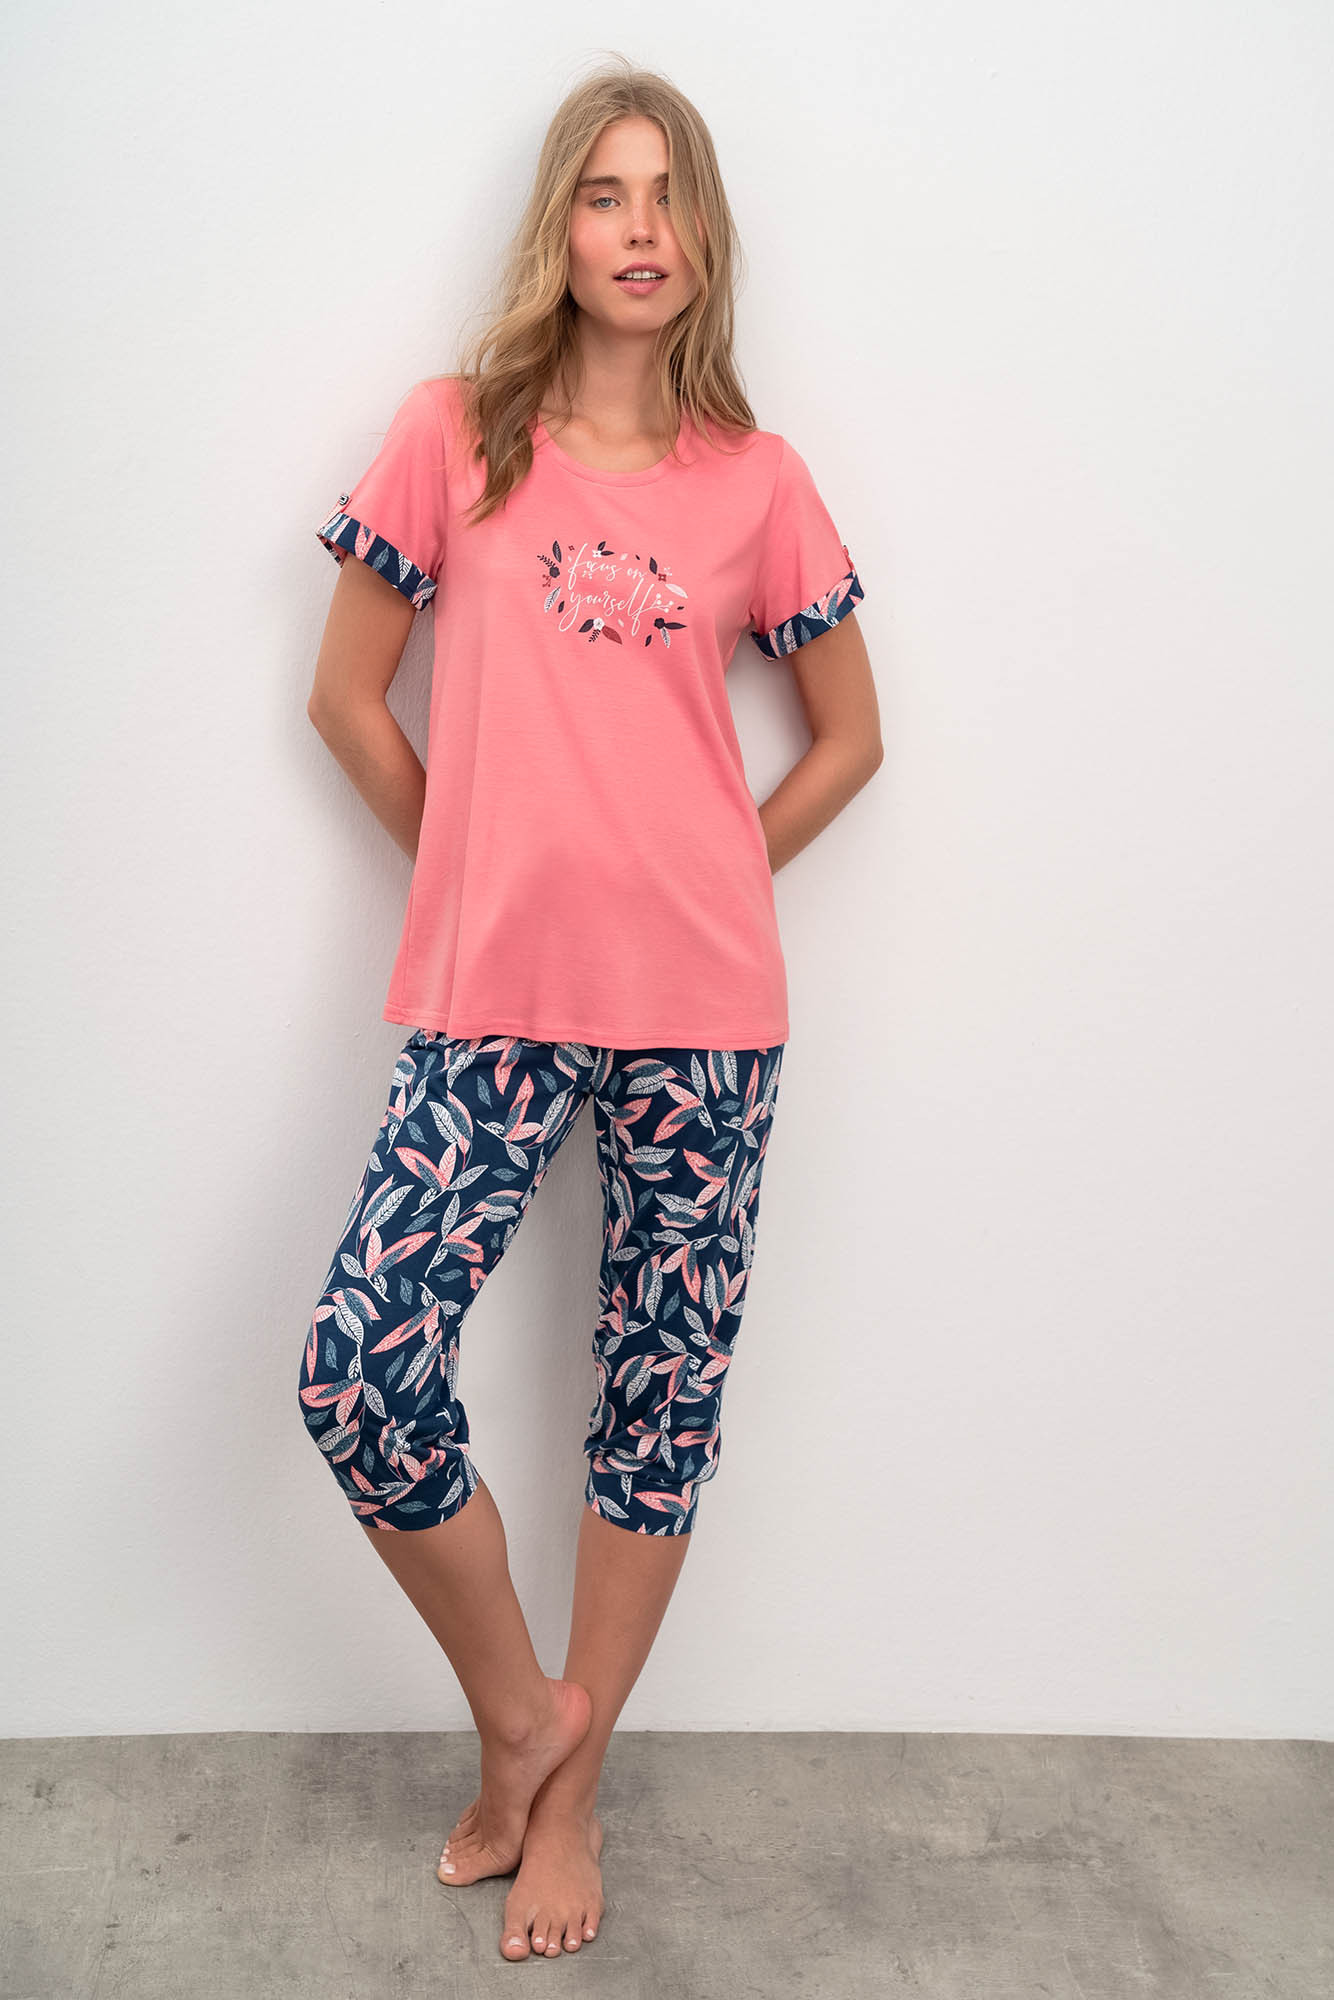 Vamp - Dvoudílné dámské pyžamo 16031 - Vamp pink ice S